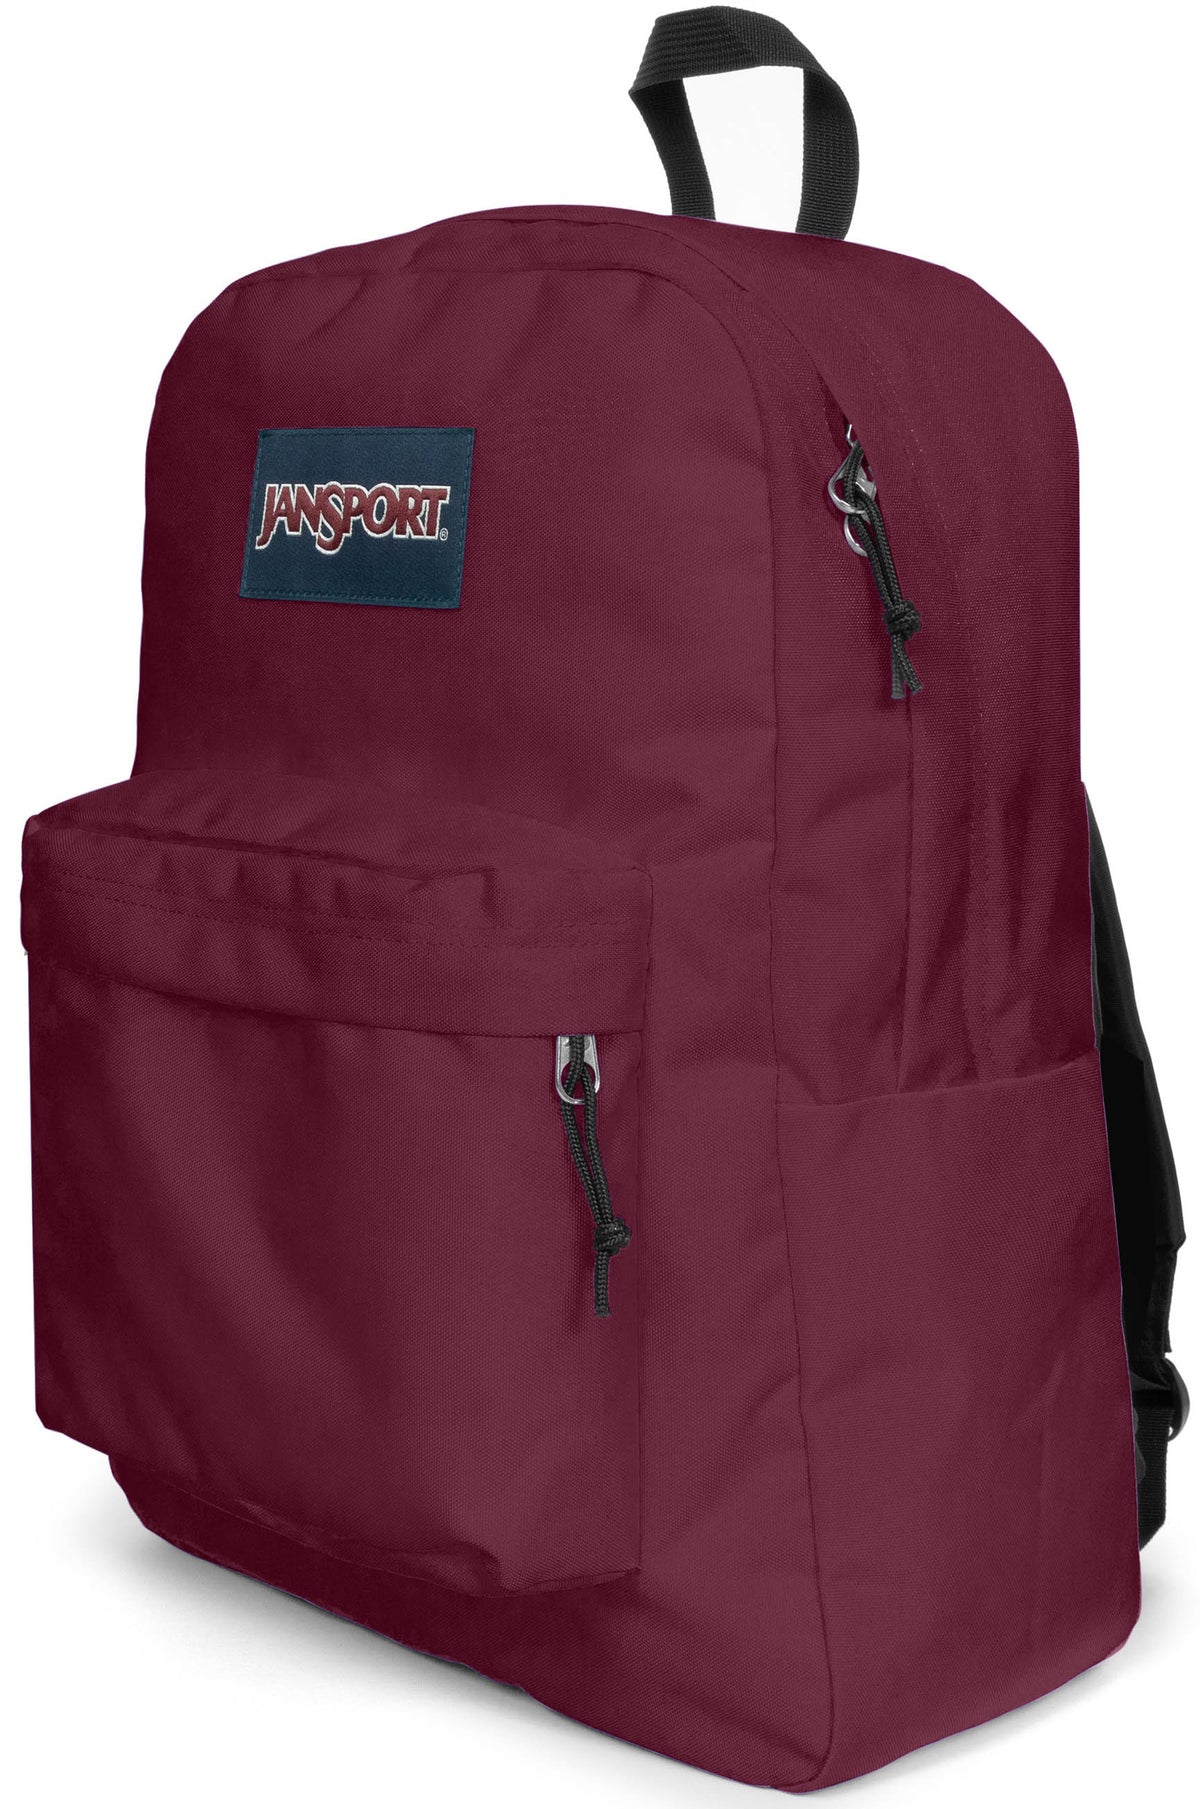 Jansport Superbreak One Backpack - Russet Red